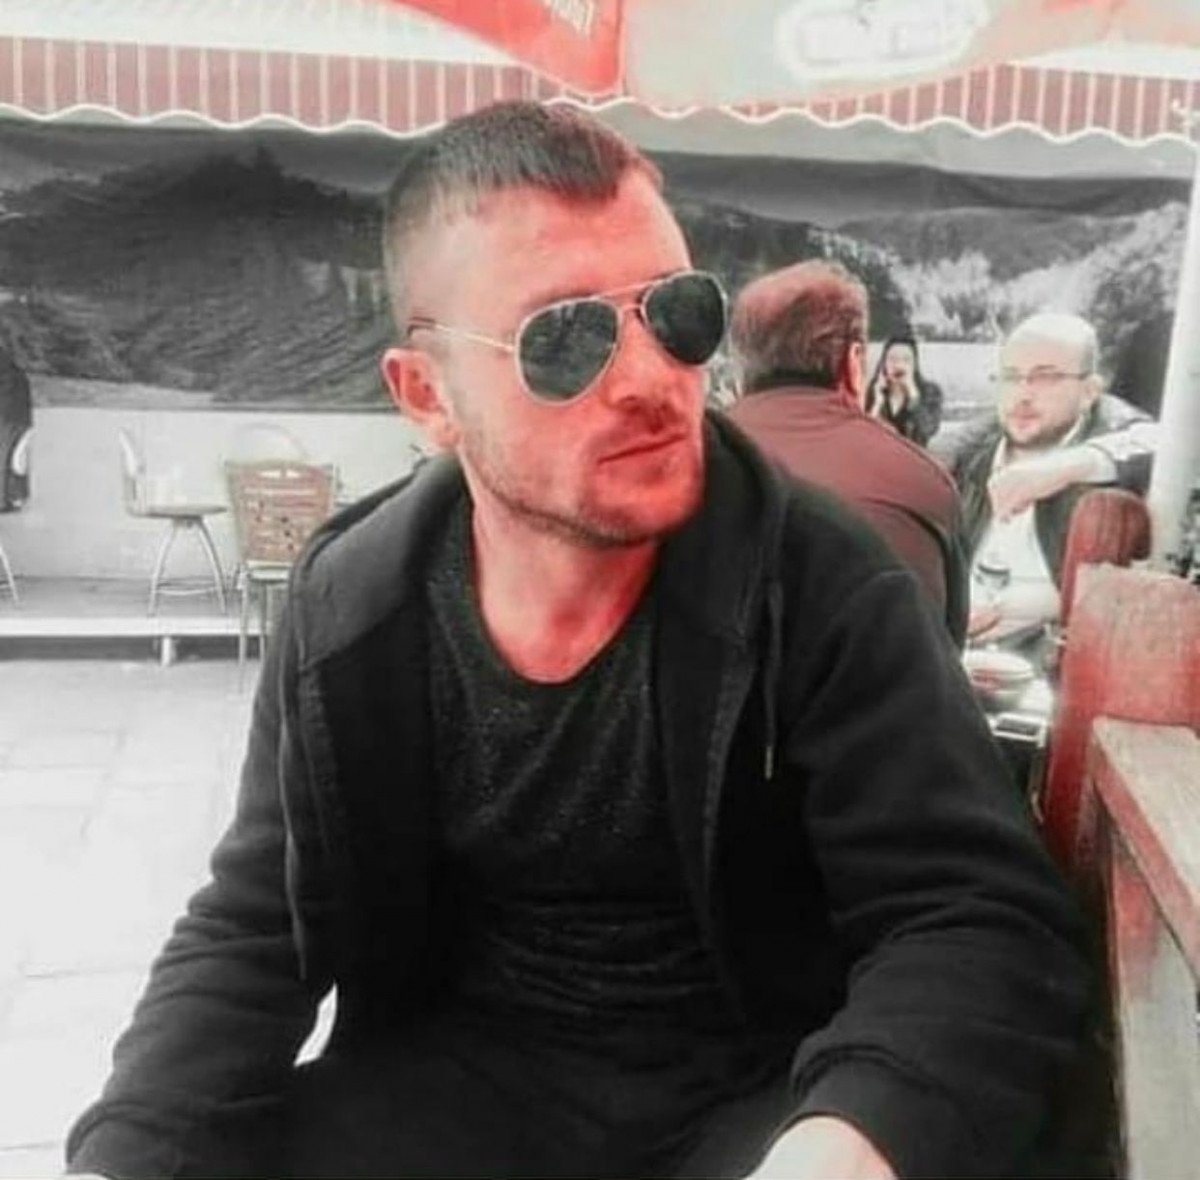 Ankara’da babasını tacizle suçlayıp öldüren sanıktan şikayetçi olmadı #2